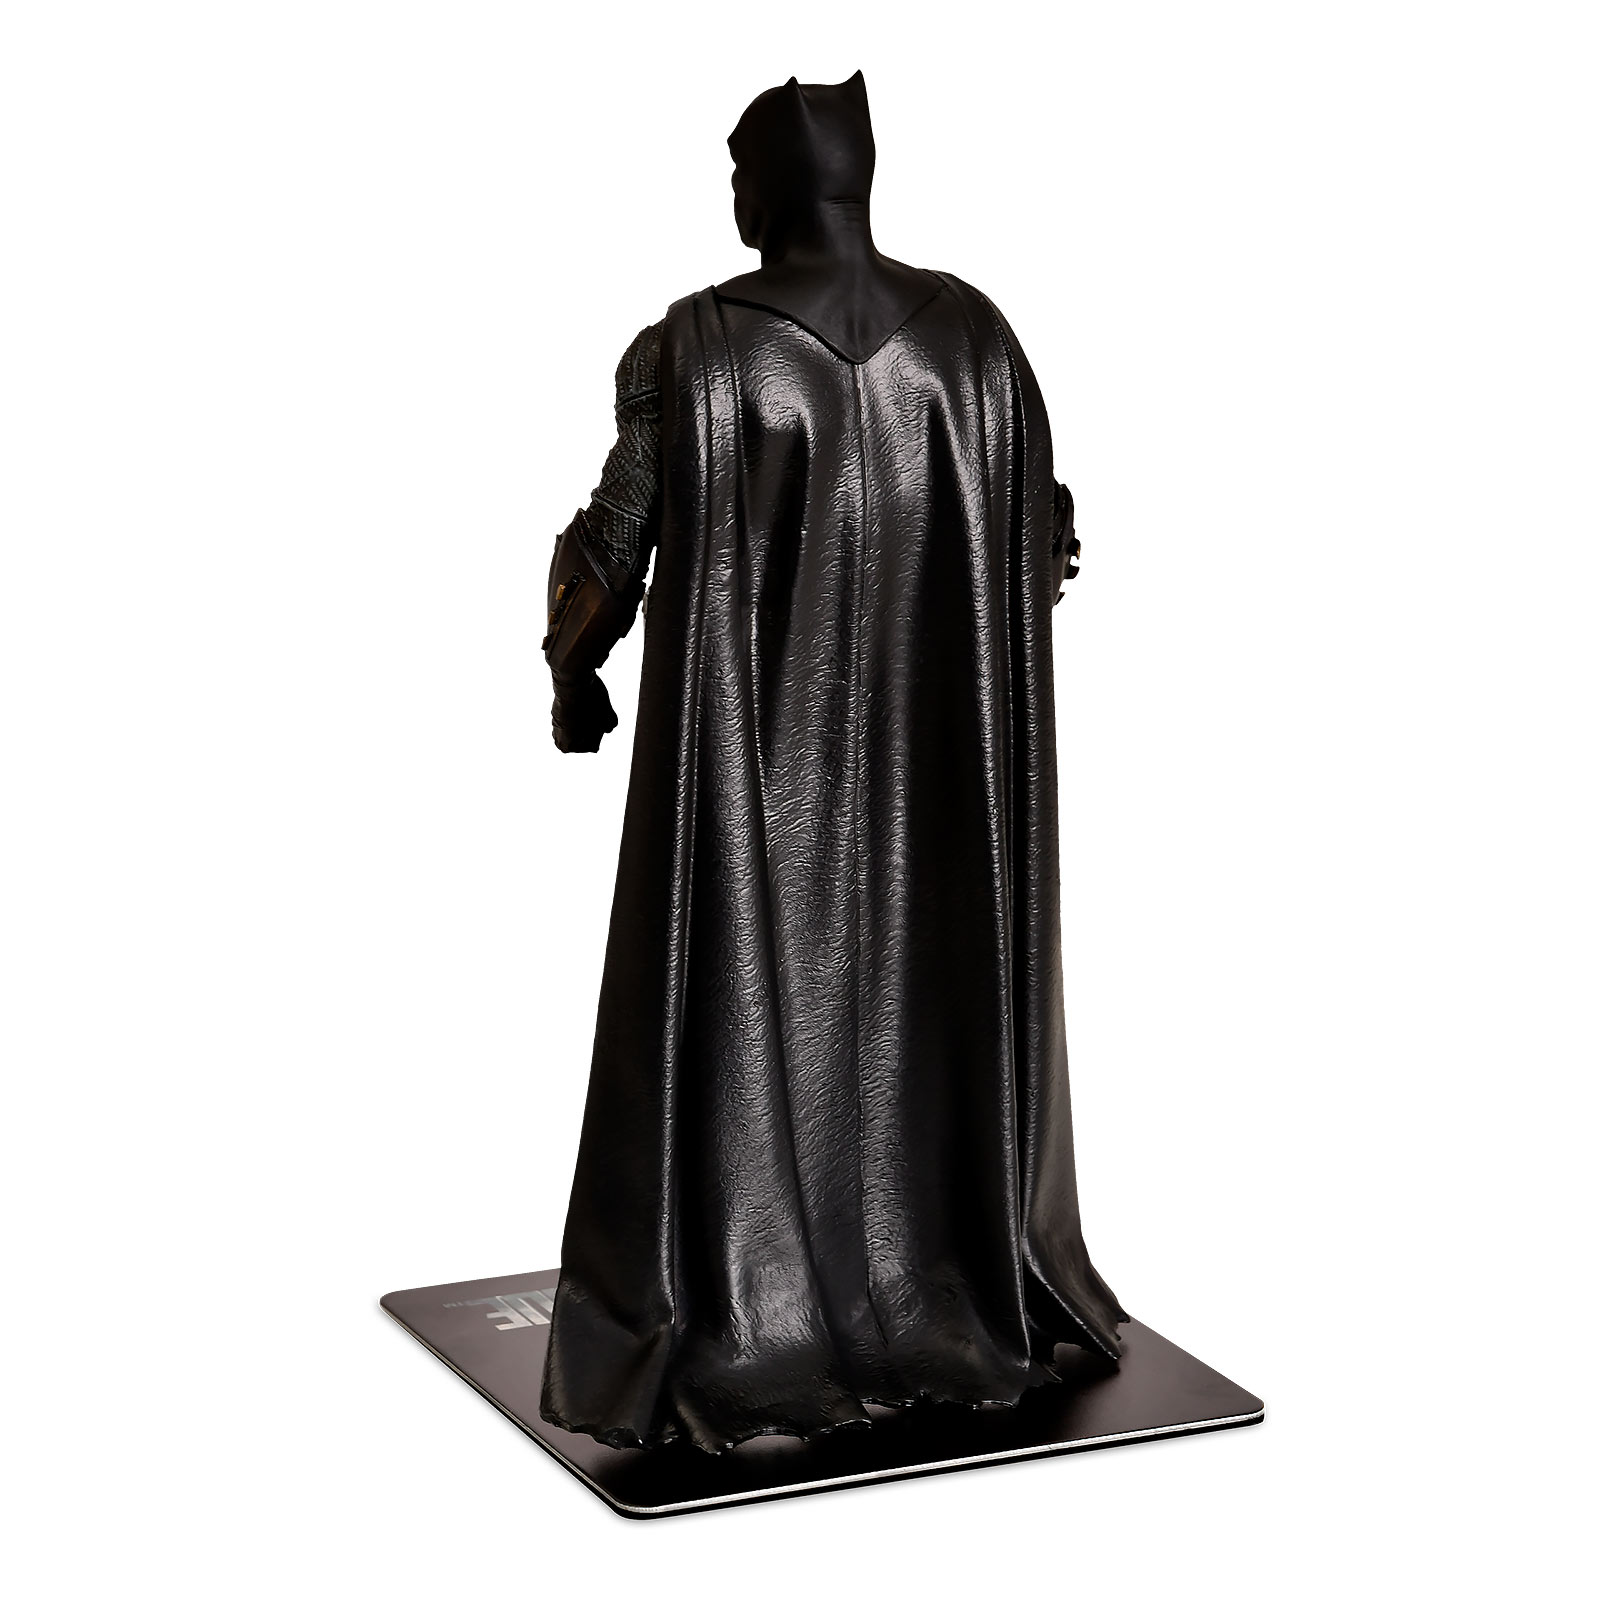 Batman - Justice League ArtFX+ Figurine 19 cm